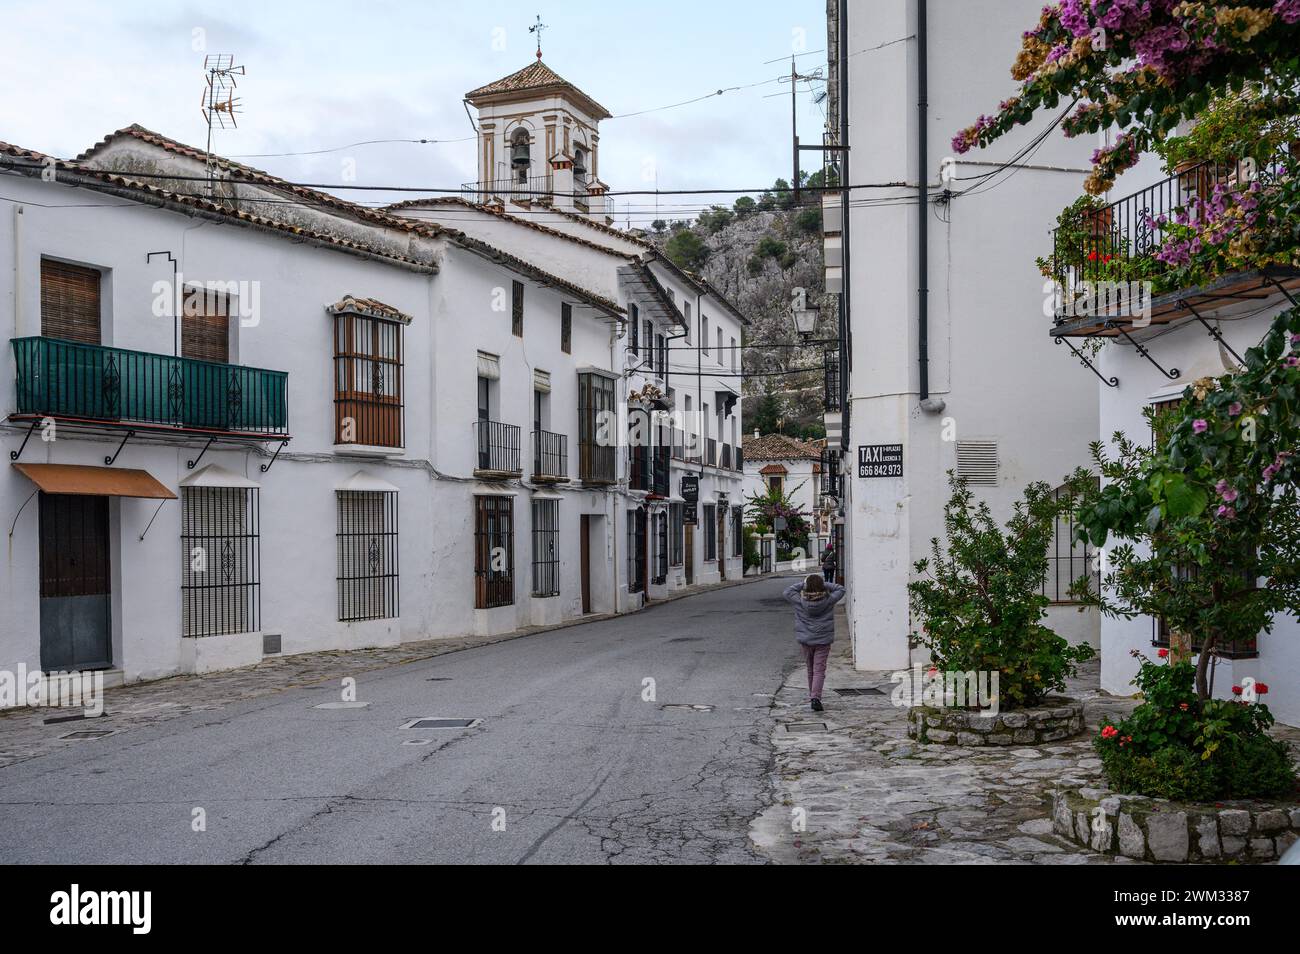 Typiques rues étroites et très jolies d'un village andalou avec des maisons blanches à Grazalema, Cadix, Espagne. Banque D'Images